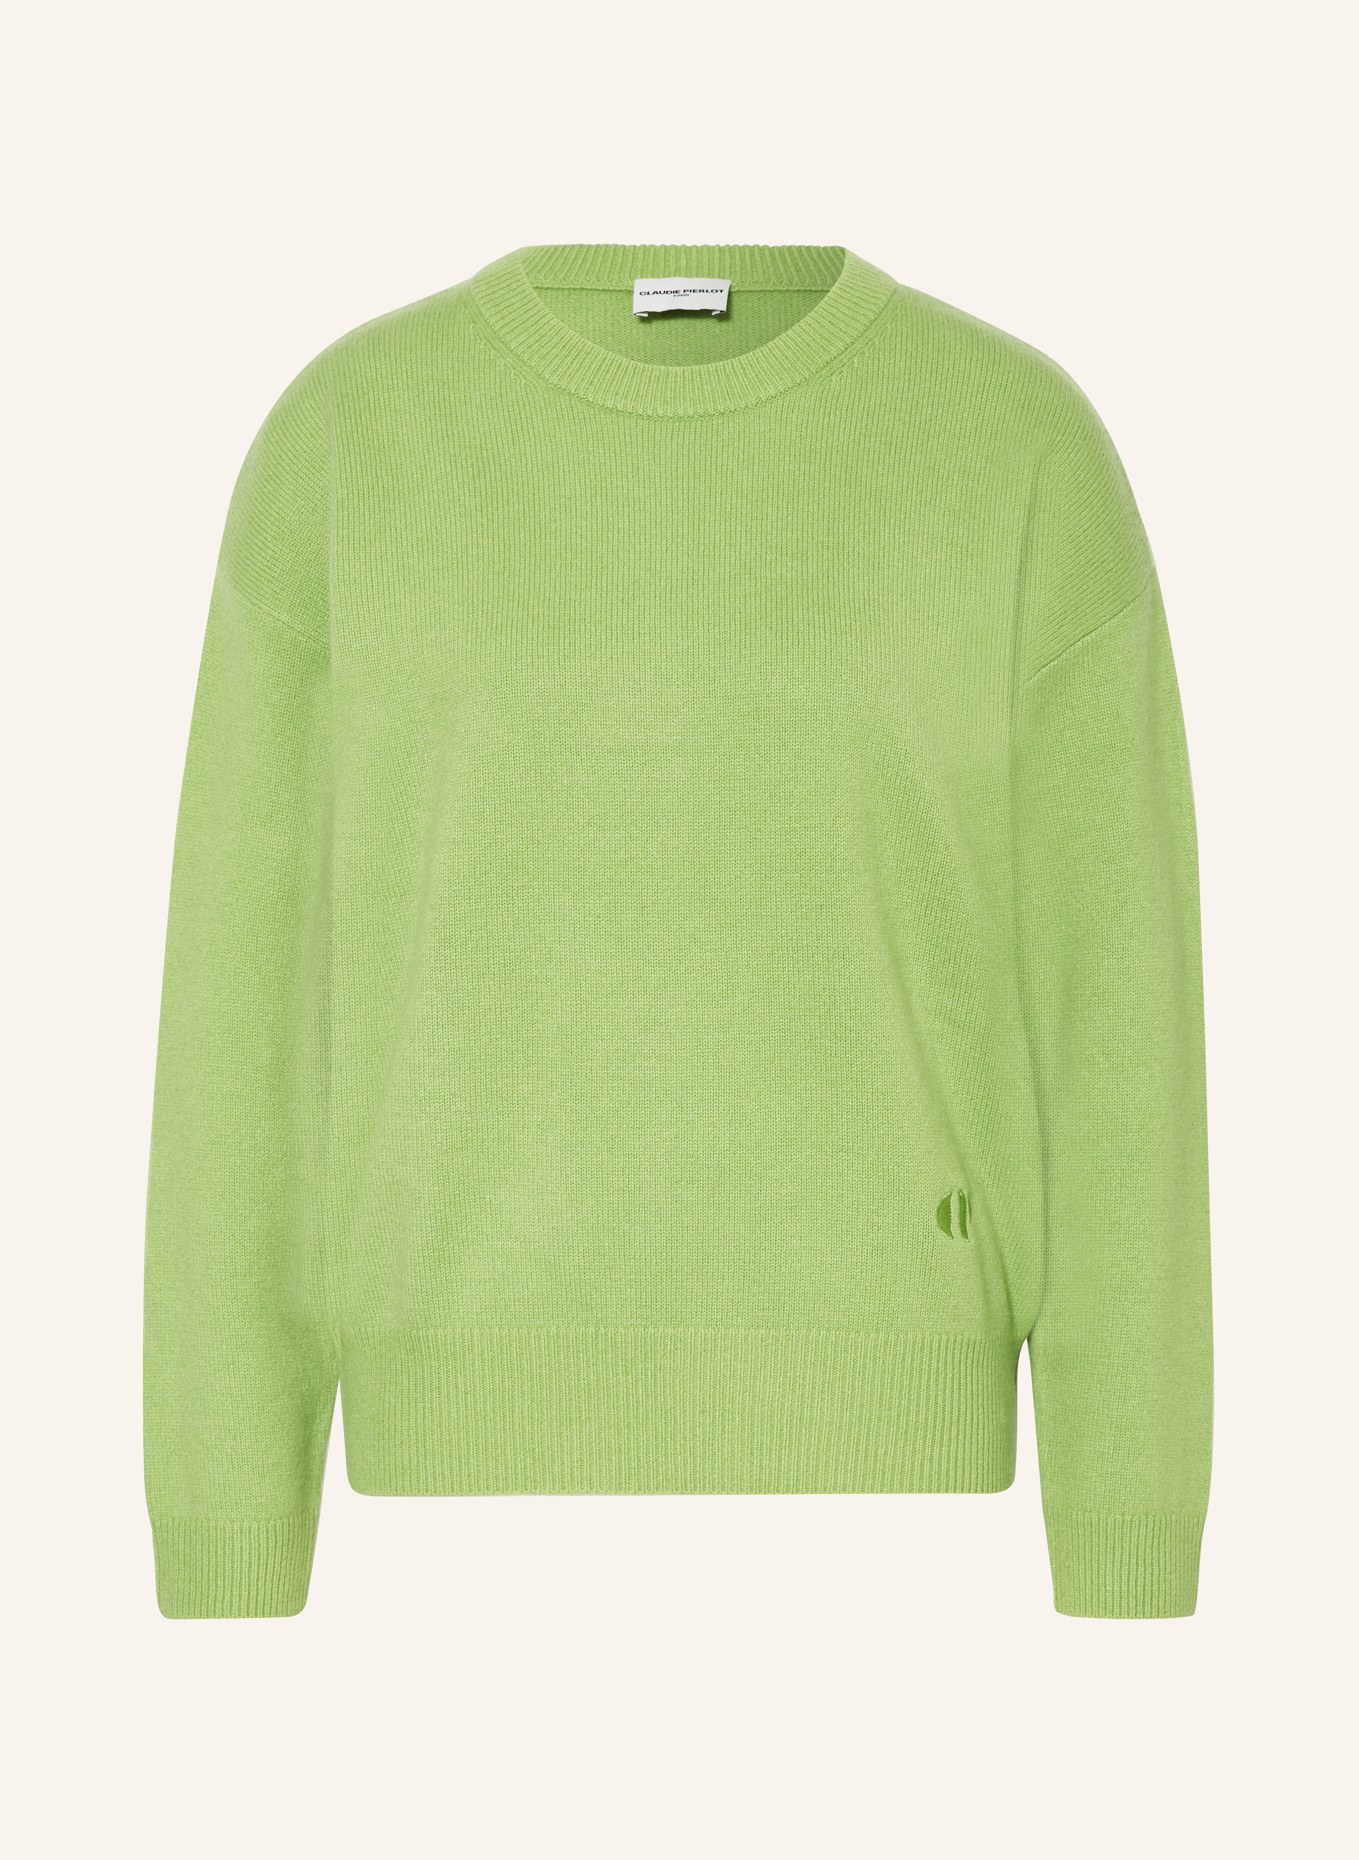 CLAUDIE PIERLOT Cashmere-Pullover, Farbe: HELLGRÜN (Bild 1)